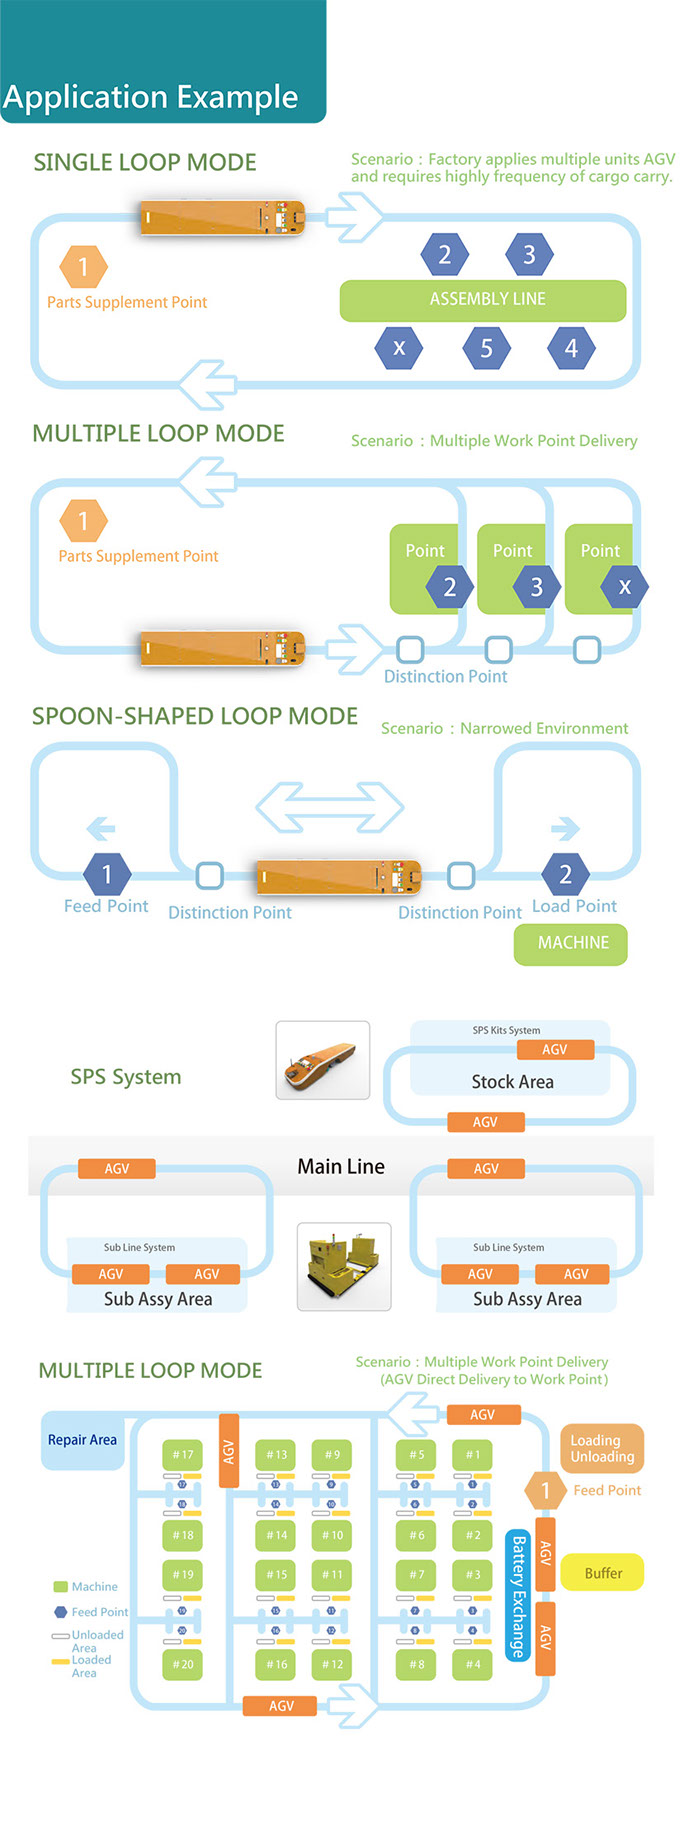 Application Example:1) single loopmode 2) multiple loop mode 3) spoon-shaped loop mode 4) SPS system 5)multiple loop mode